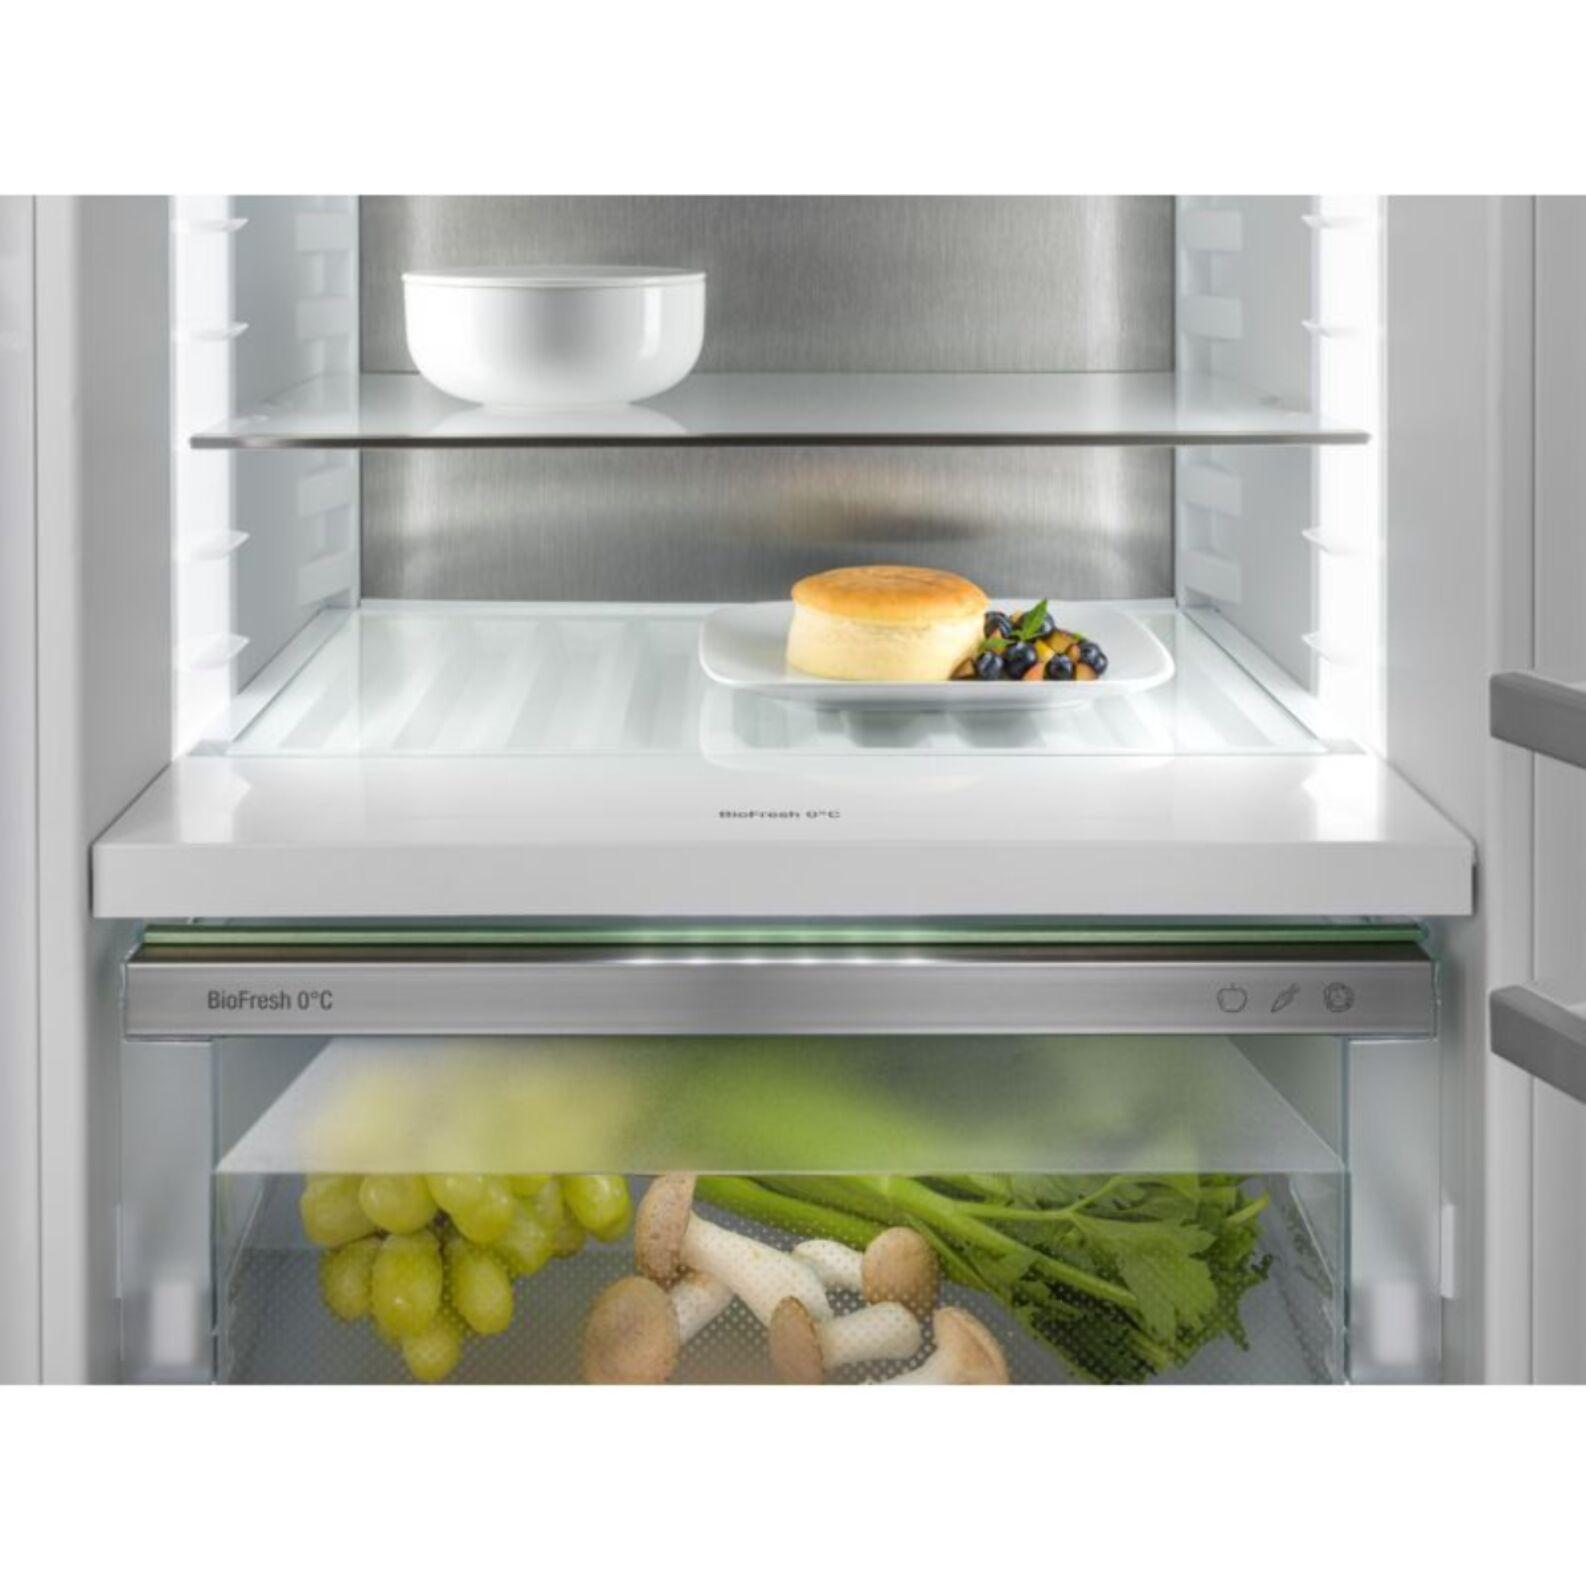 Réfrigérateur combiné encastrable LIEBHERR ICBbi5152-22 Prime BioFresh